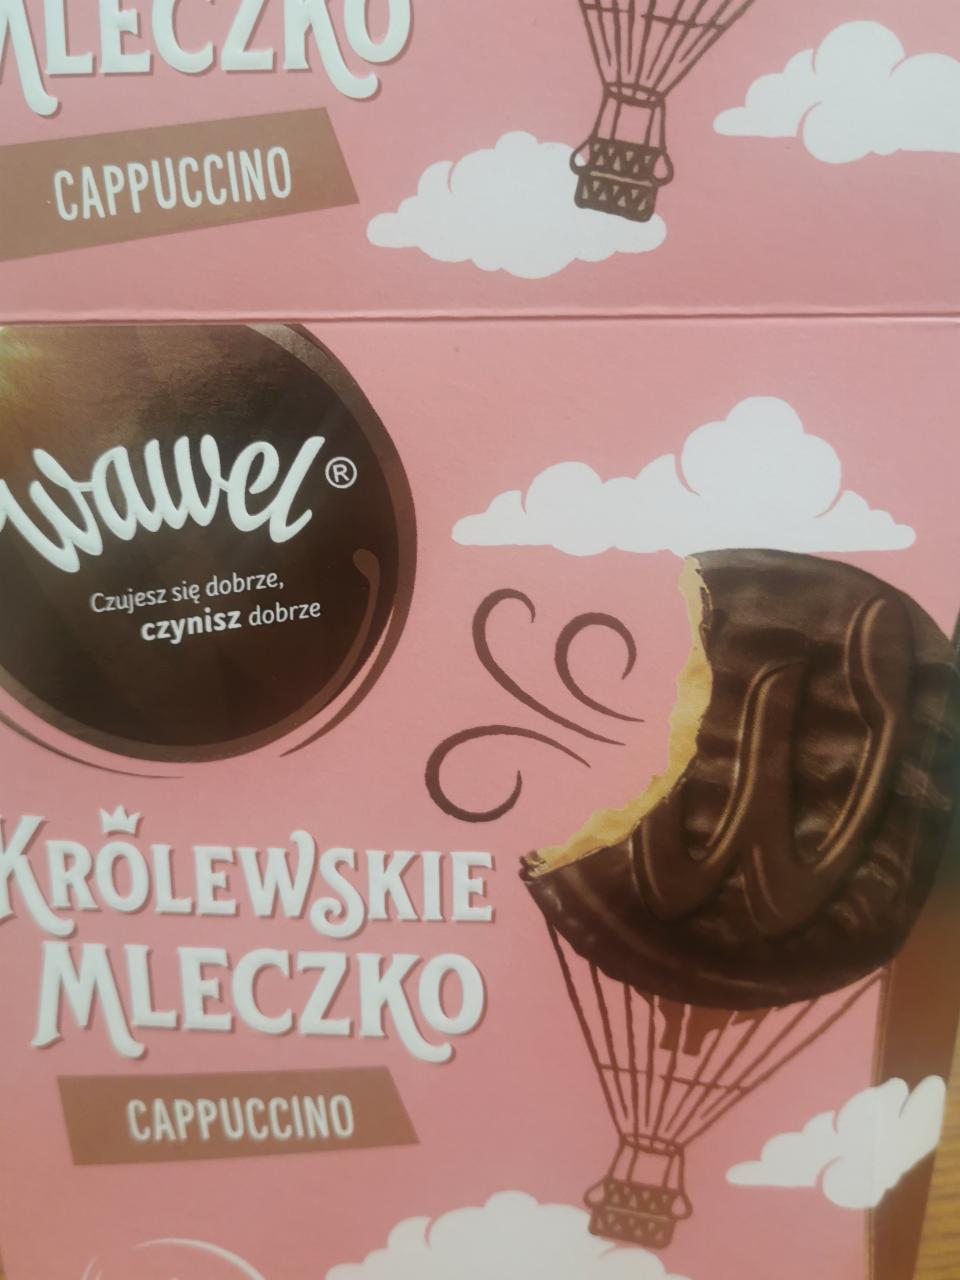 Фото - Молочко со вкусом капучино Королевское Królewskie Wawel